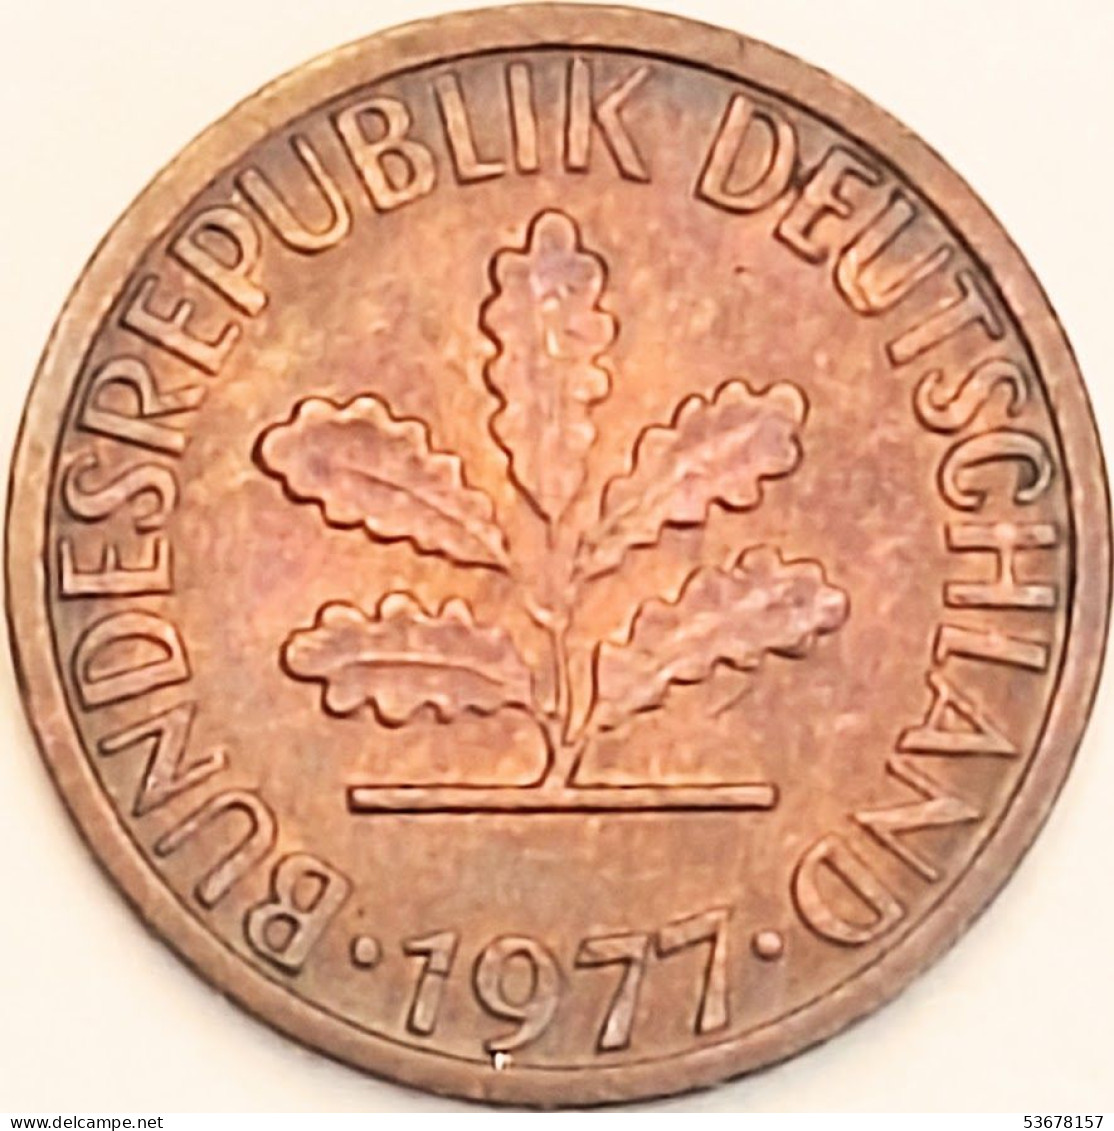 Germany Federal Republic - Pfennig 1977 D, KM# 105 (#4471) - 1 Pfennig